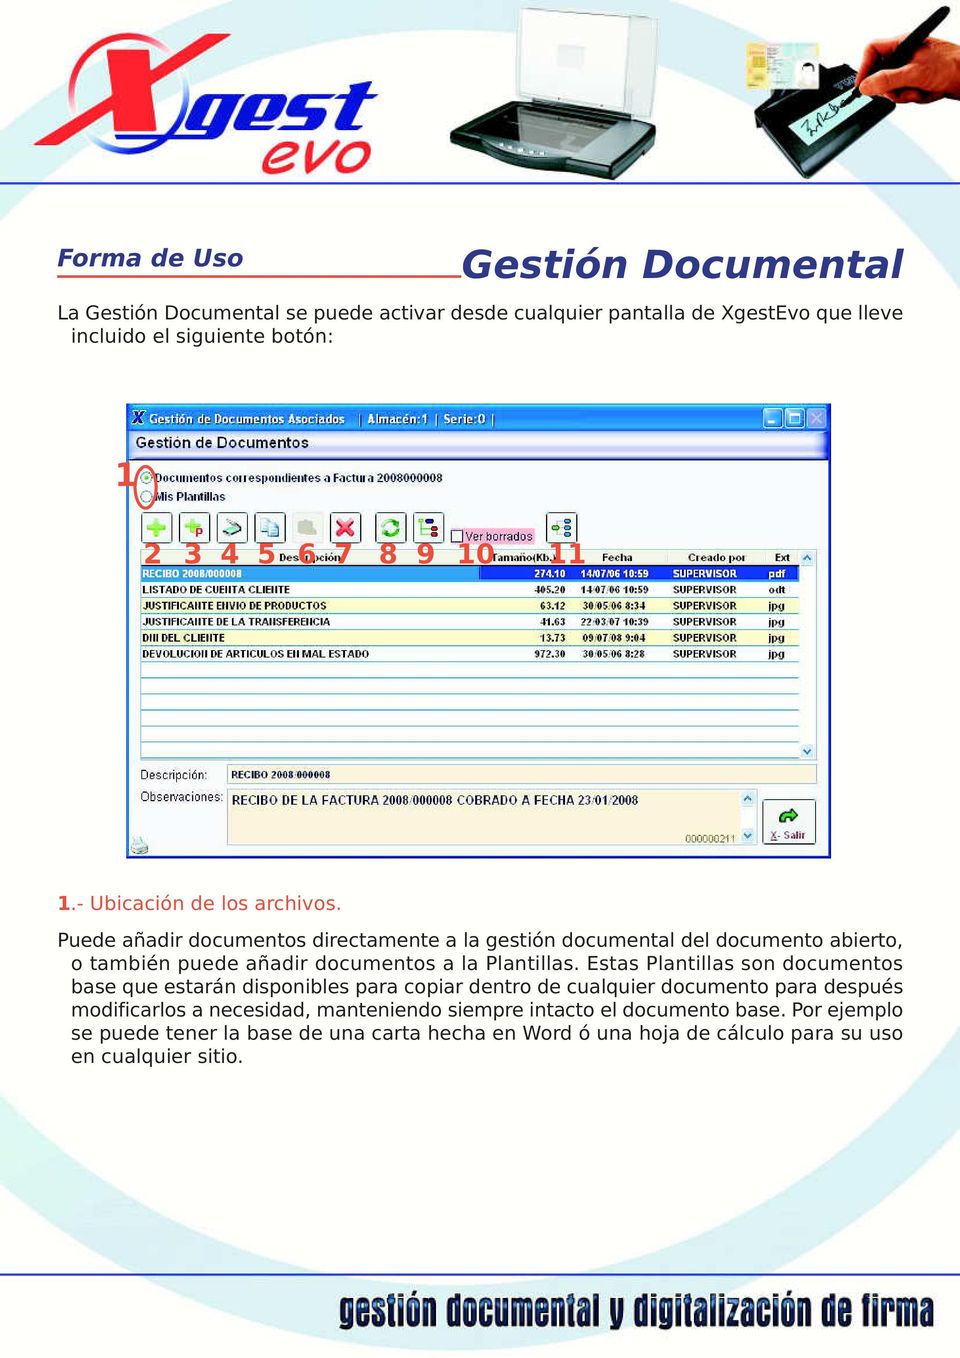 Puede añadir documentos directamente a la gestión documental del documento abierto, o también puede añadir documentos a la Plantillas.